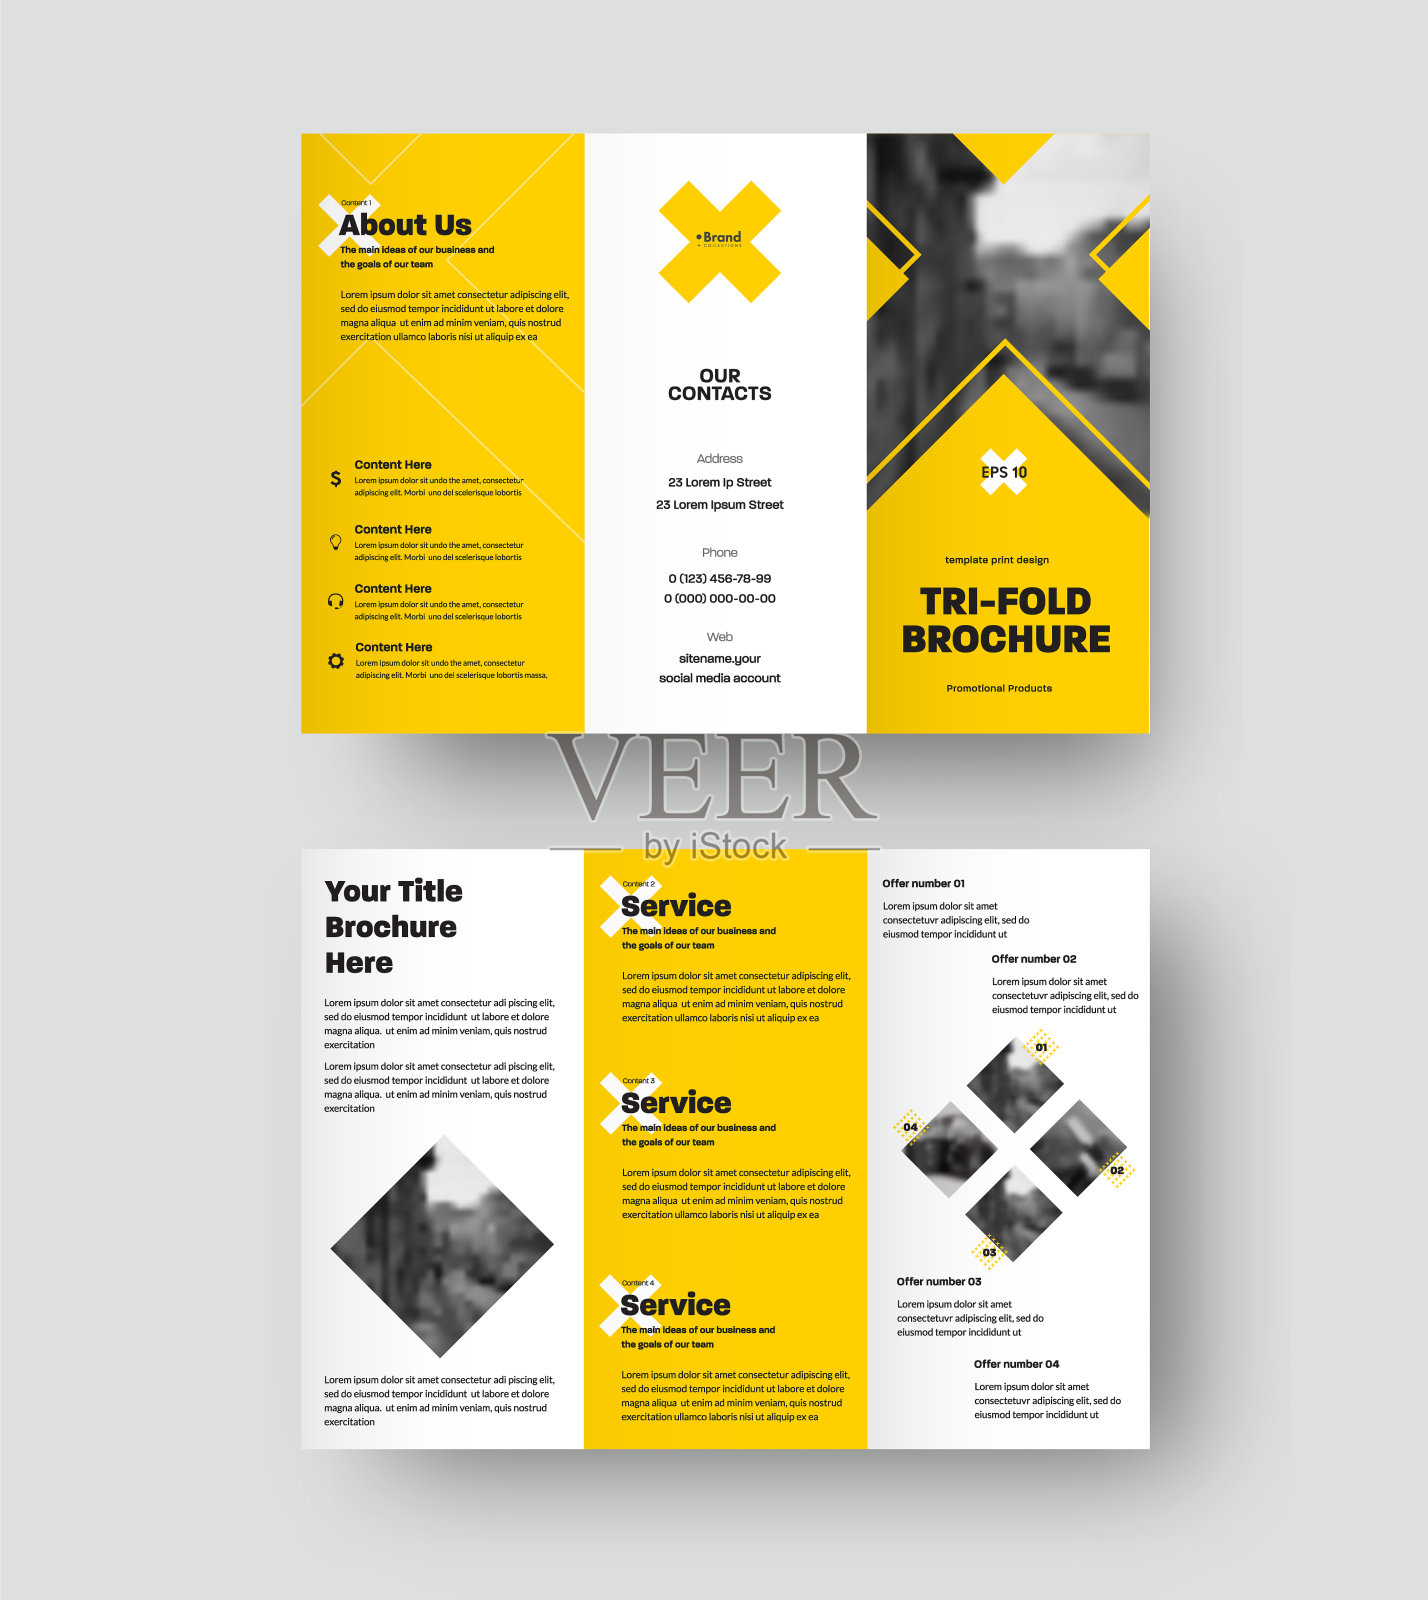 矢量宣传册模板，三联展示与几何设计，十字和黄色元素。设计模板素材